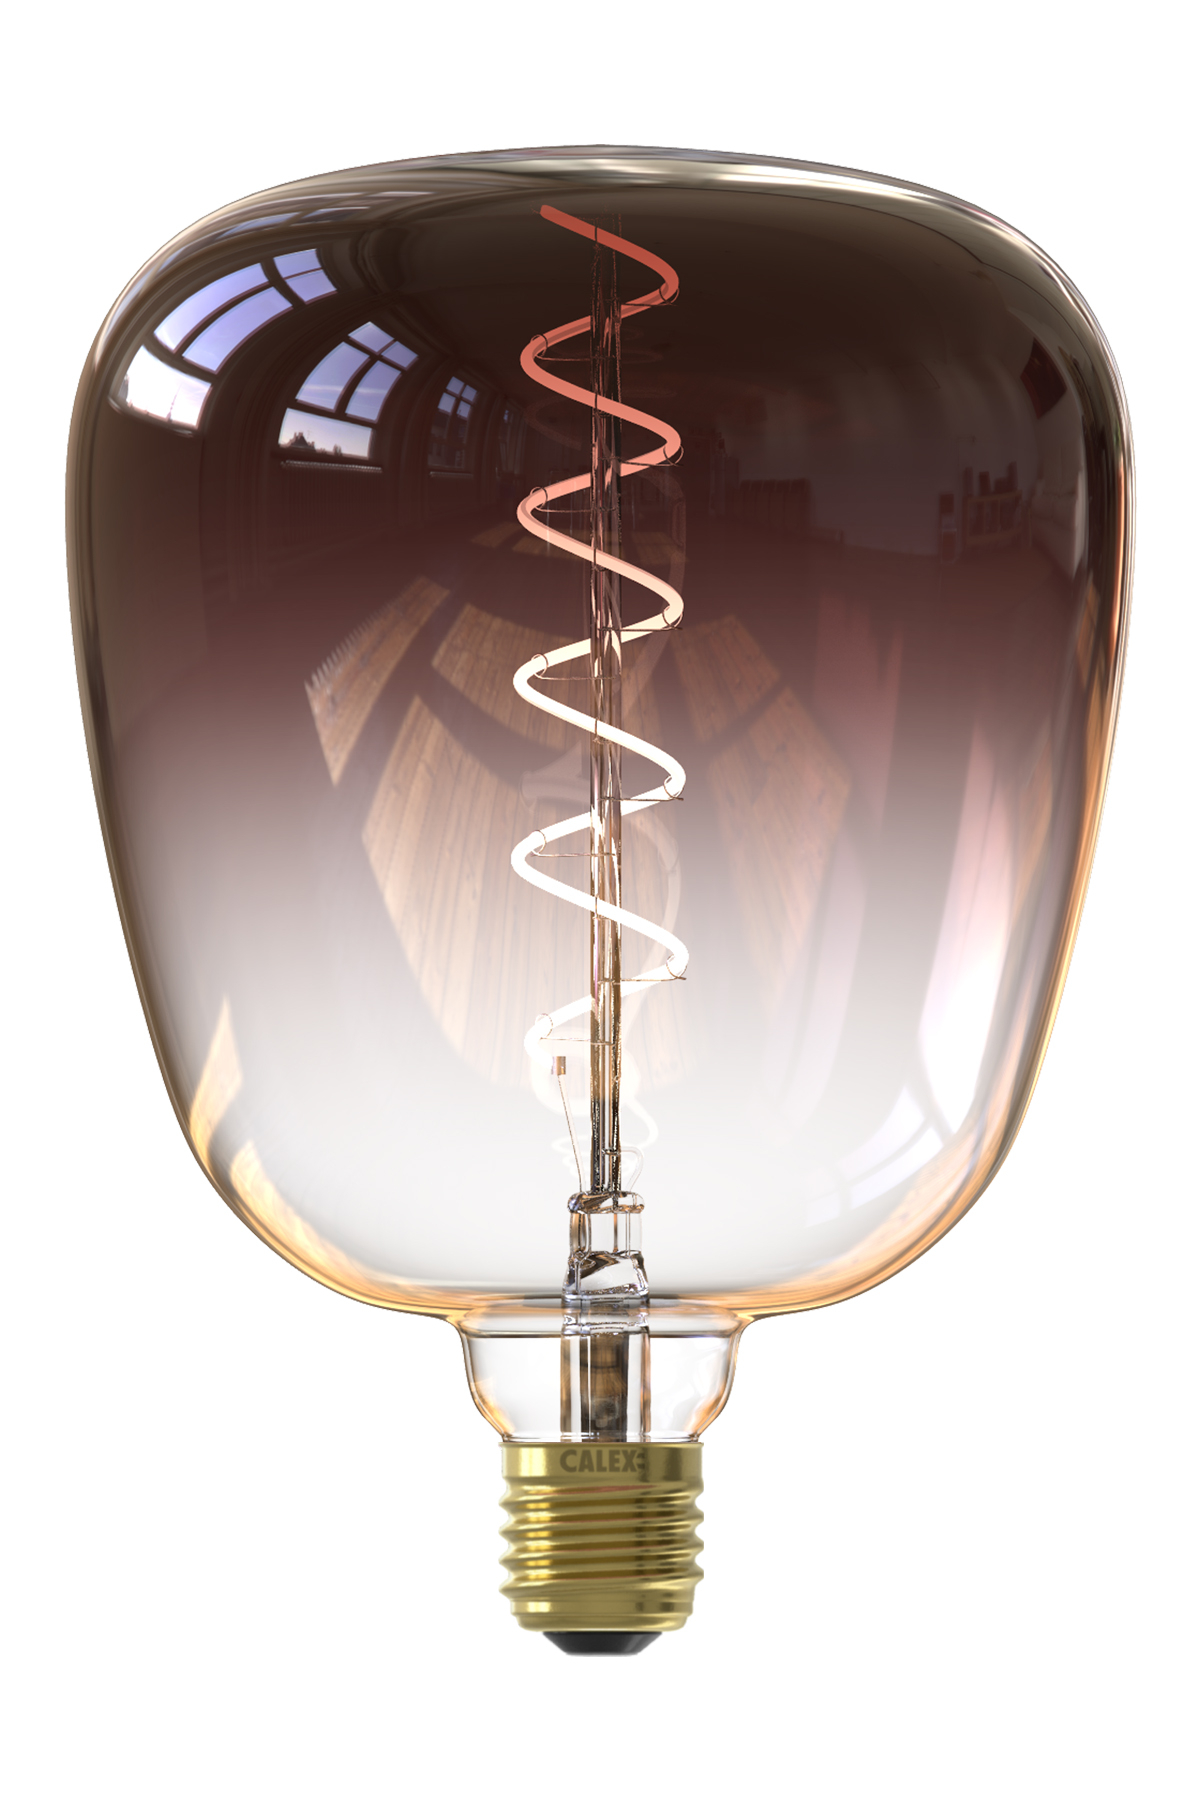 Lampe LED - Dia 14 cm - 6W - 290 LM - Marron